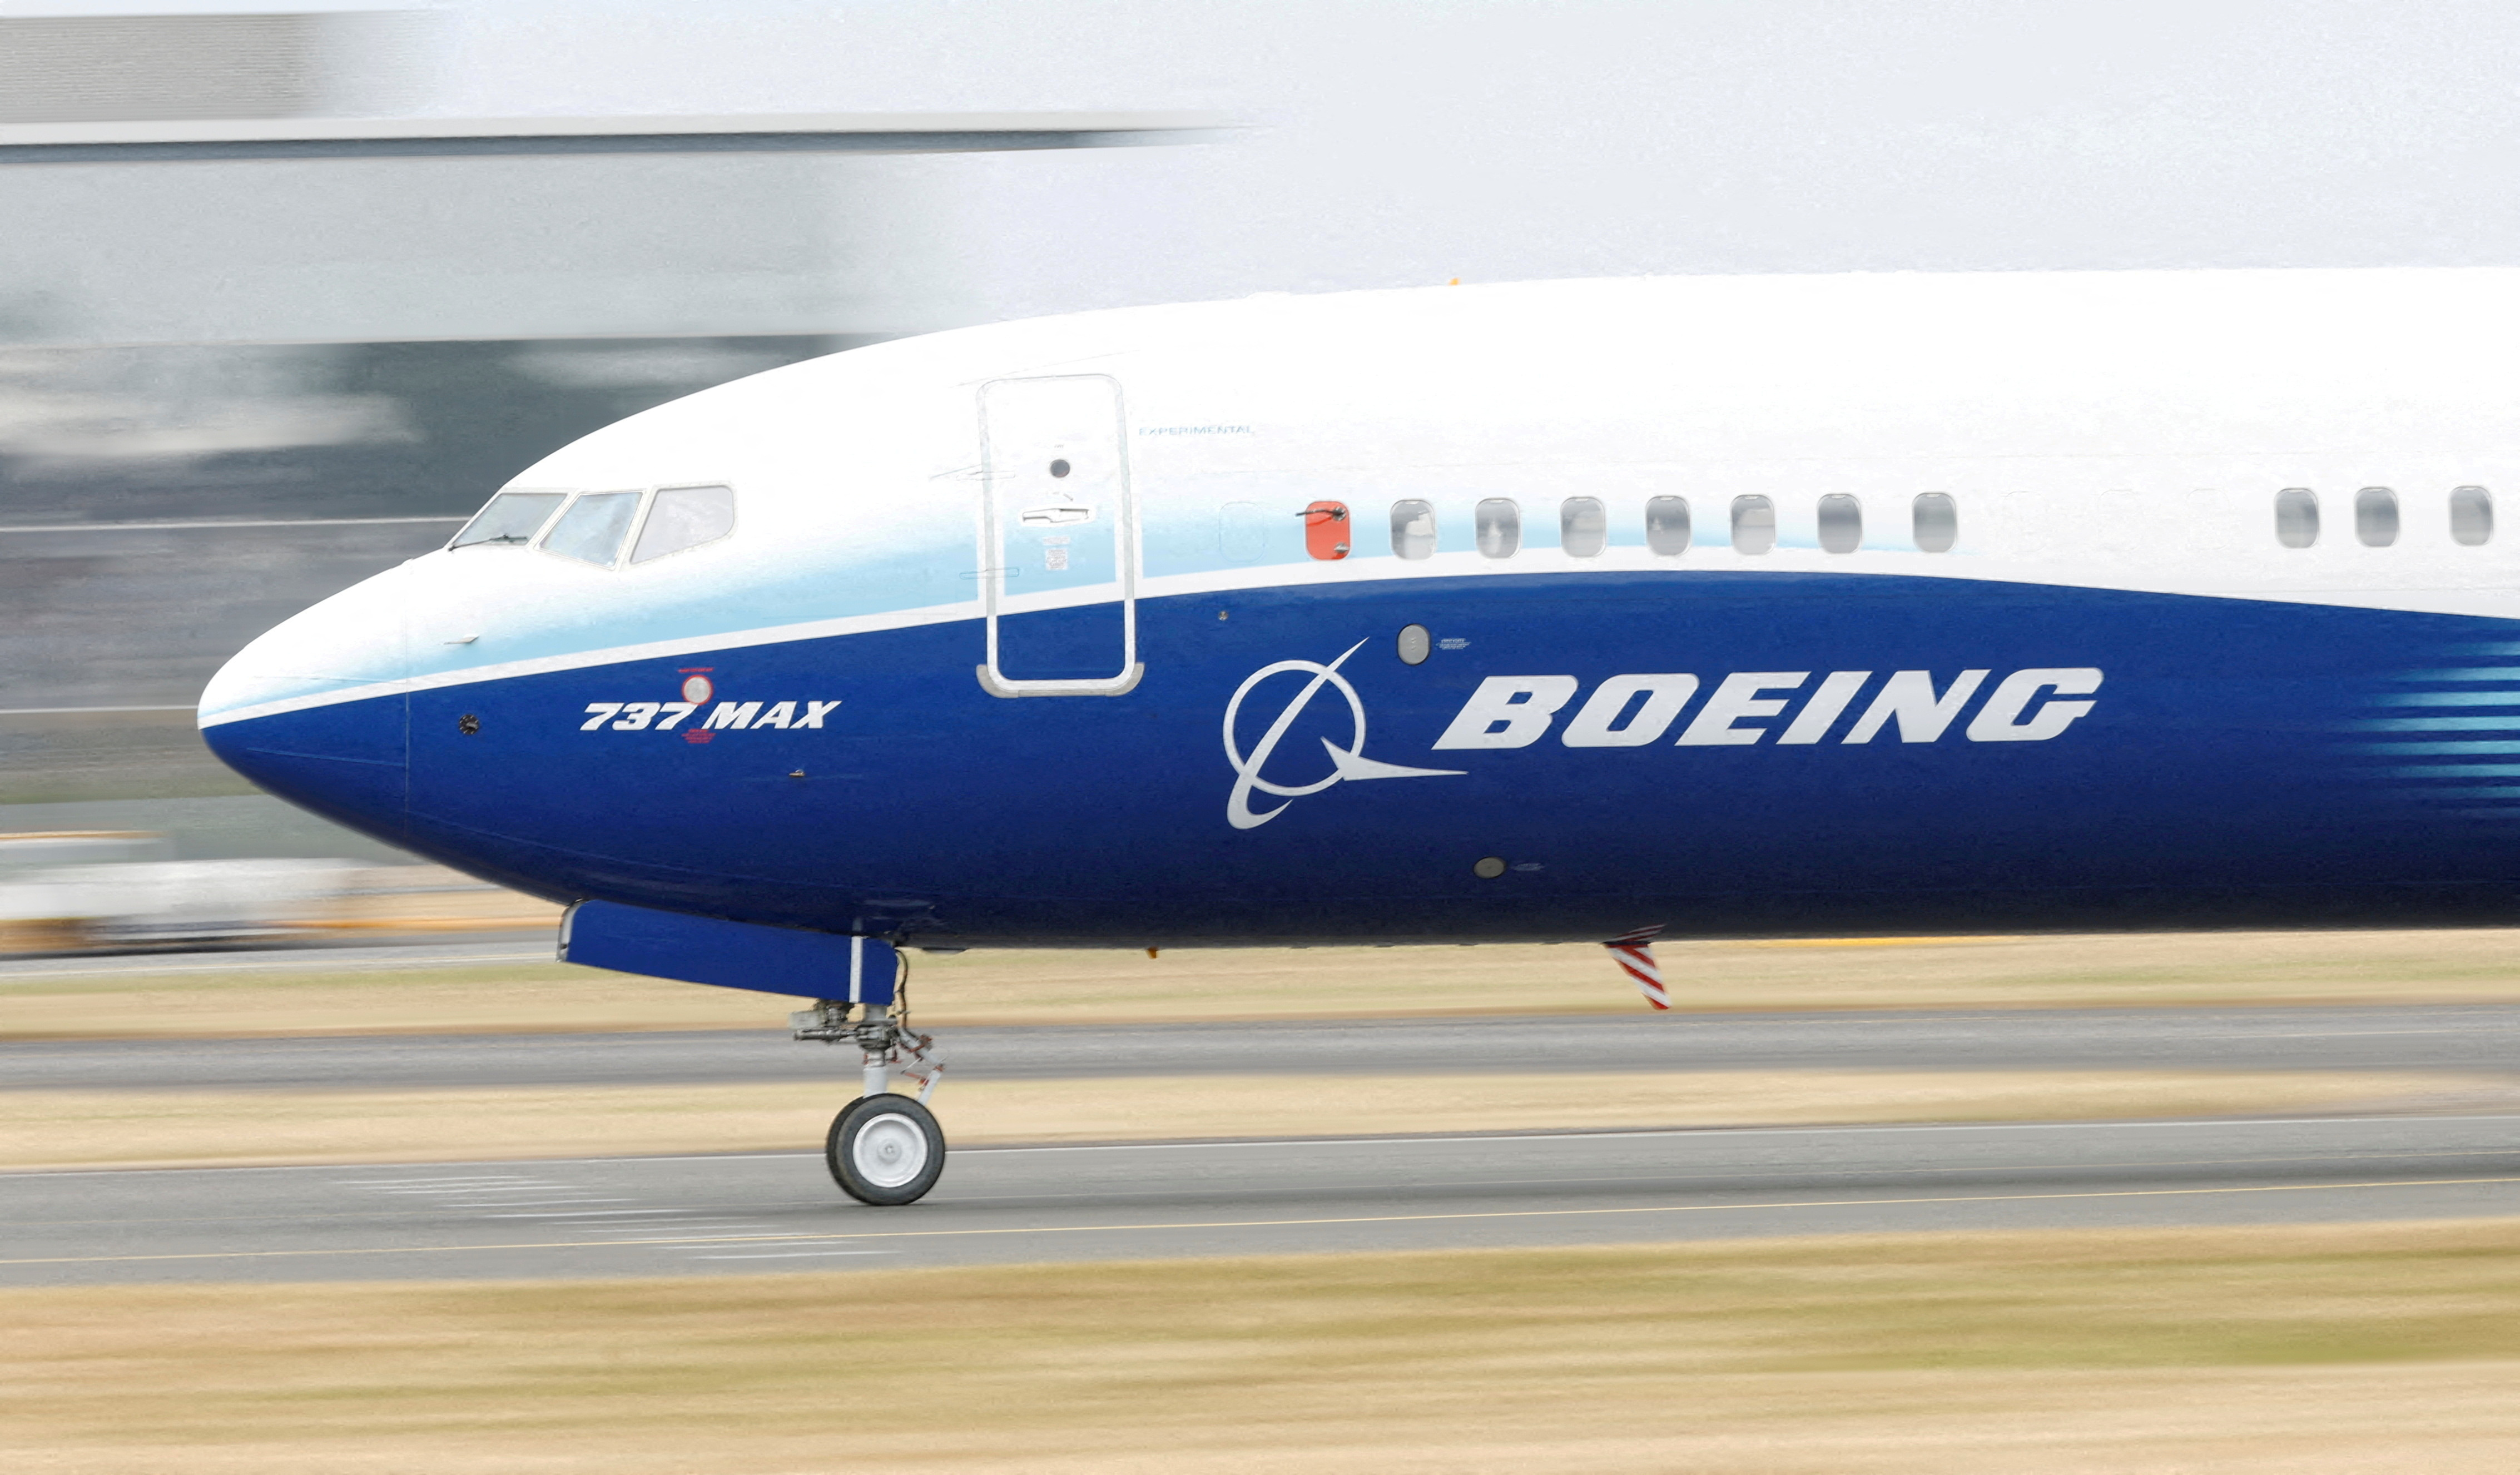 Boeing : les livraisons de 737 MAX s'effondrent en février, avec seulement 17 appareils